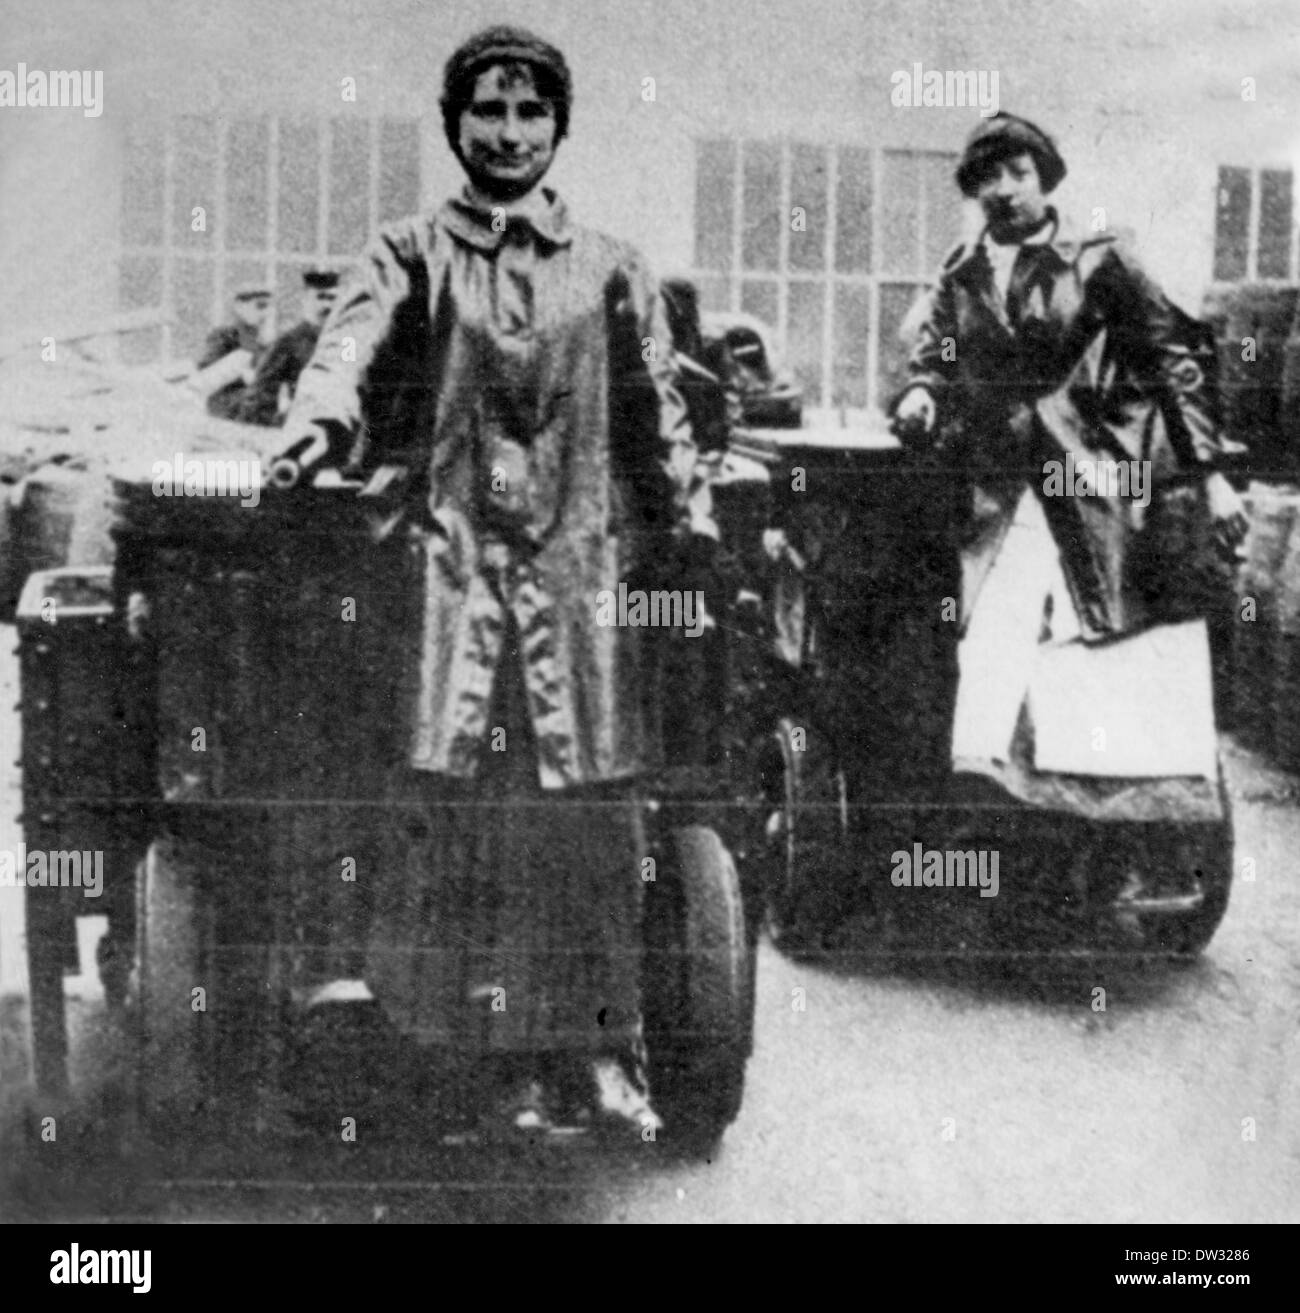 Französische Frauen arbeiten in einer Munitionsfabrik in Frankreich - hier stehen Frauen auf motorisierten Wagen, um Munitionsstücke zu transportieren. Ort und Datum unbekannt. Fotoarchiv für Zeitgeschichte - KEIN KABELDIENST Stockfoto